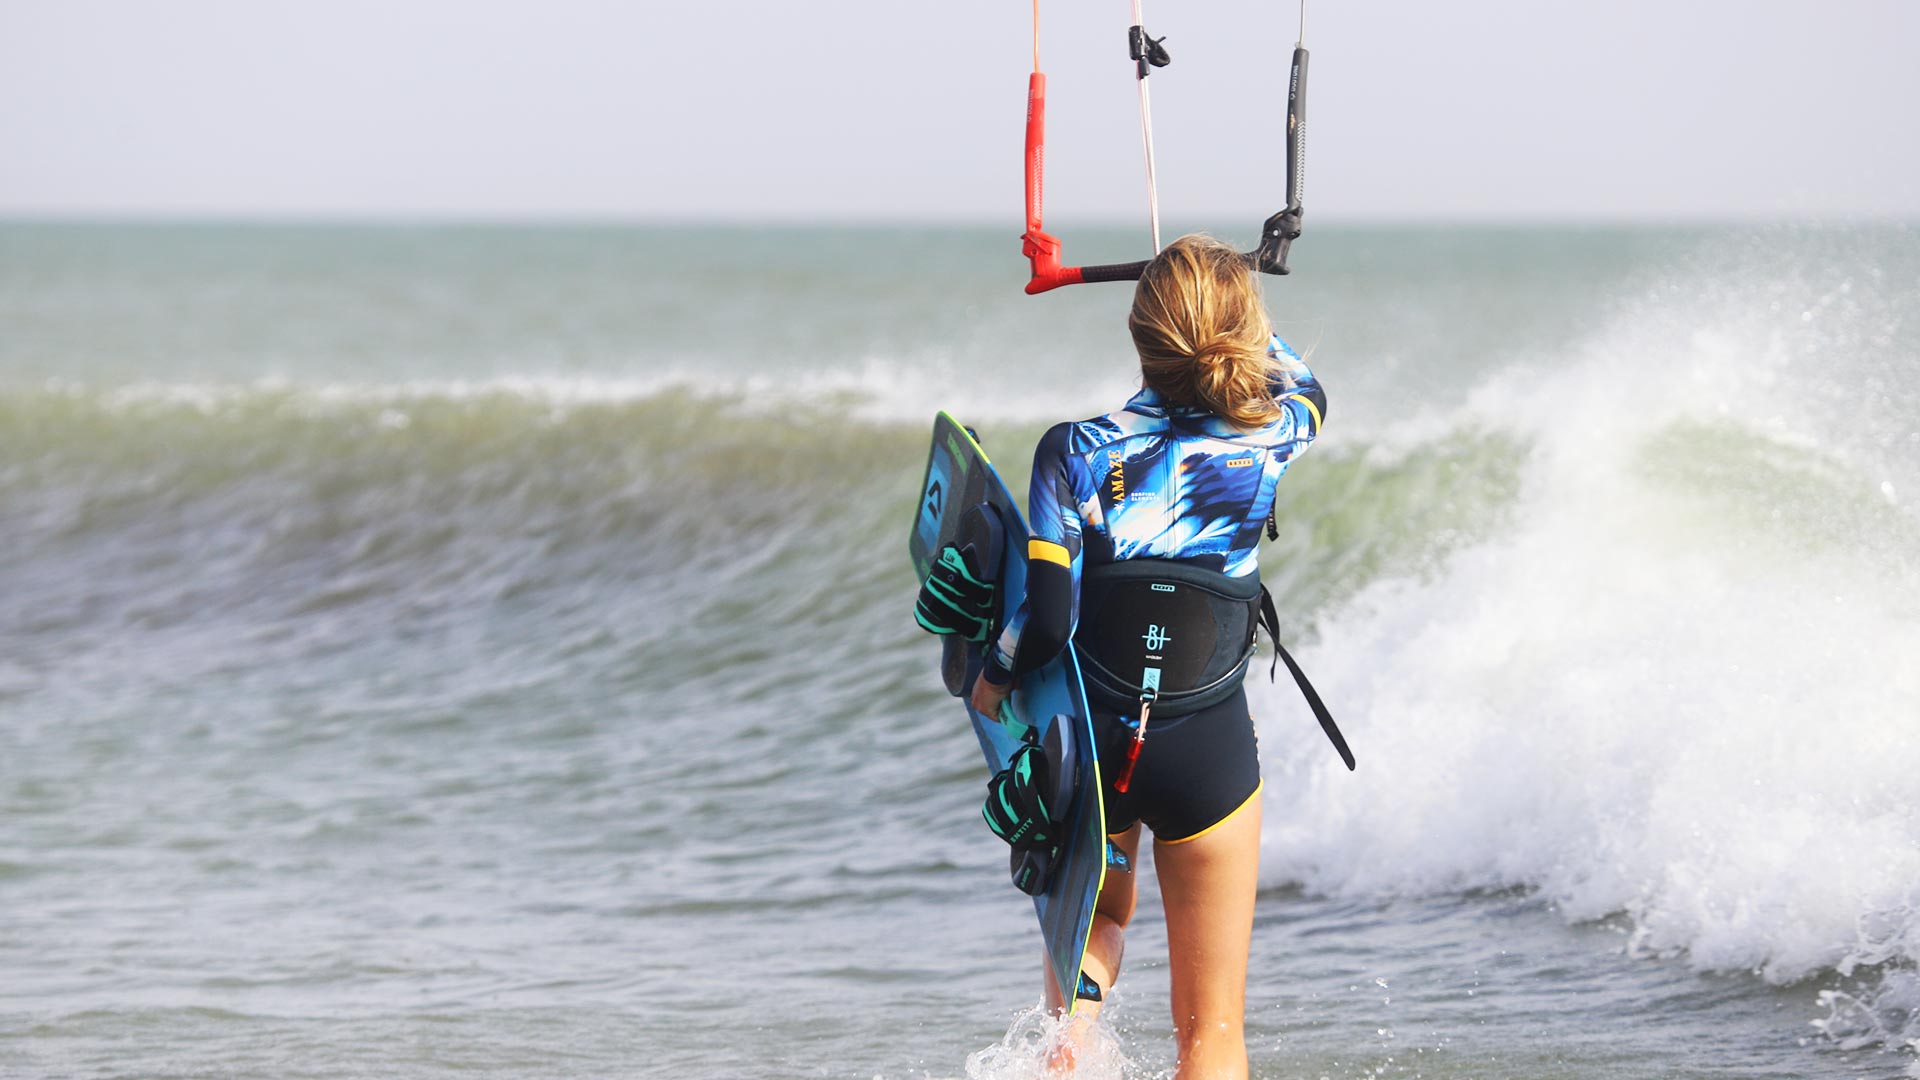 Jeune fille qui se mets à l'eau en kitesurf face à une vague